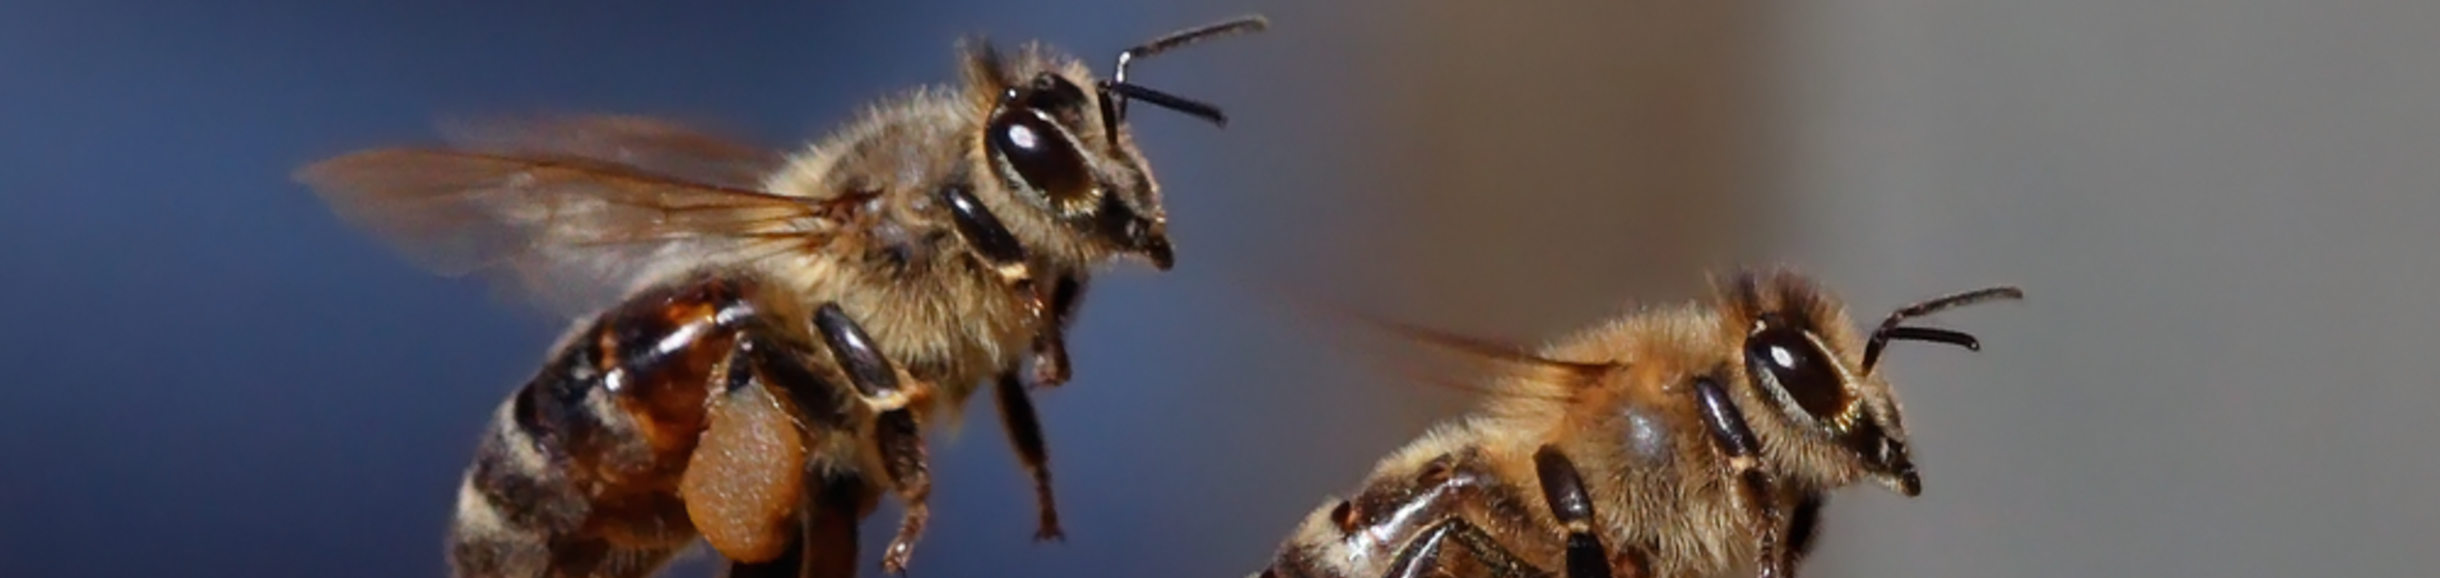 Honeybees in flight